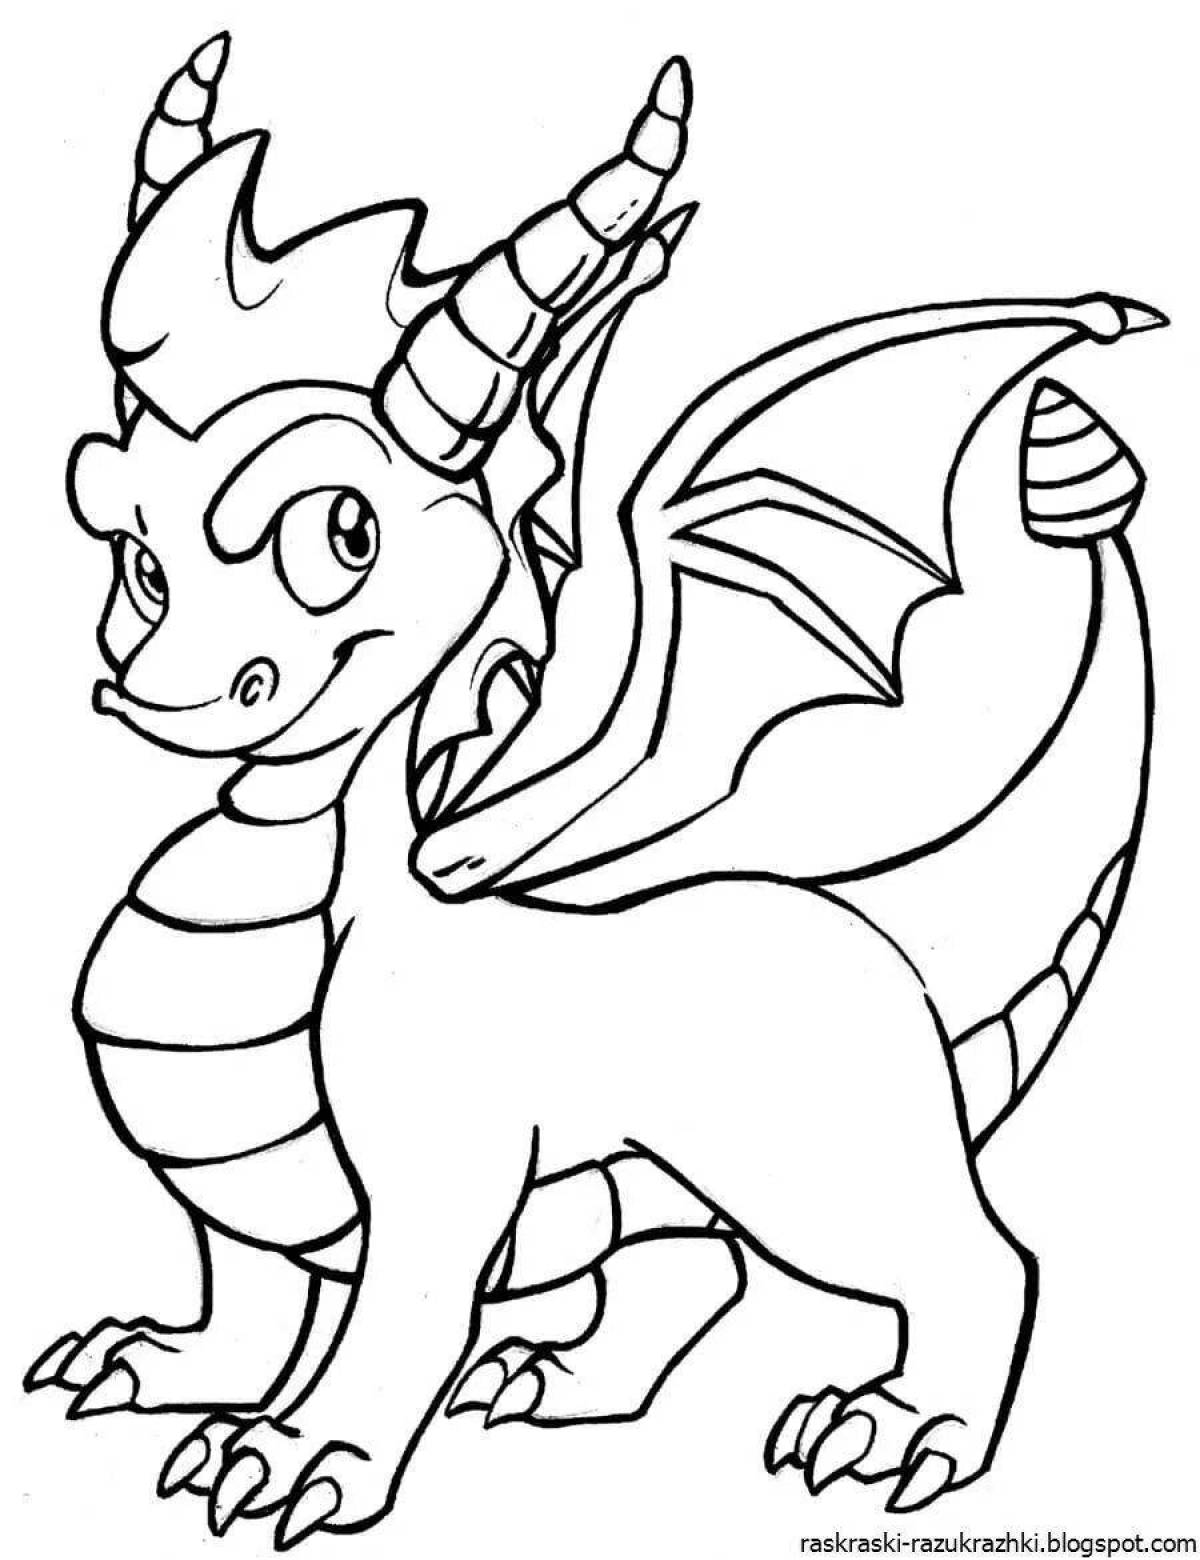 Забавная раскраска дракон для детей 7 лет